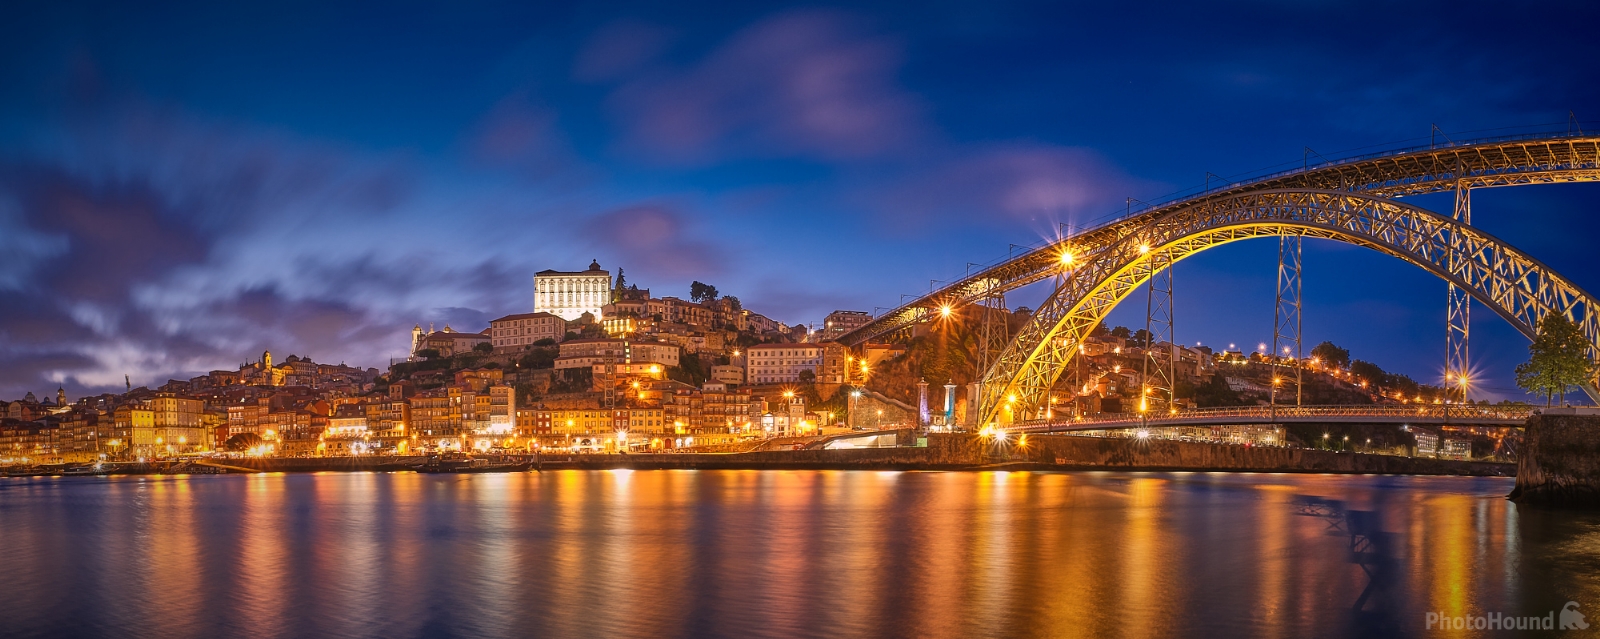 Image of Porto city - Portugal by Roman Martin